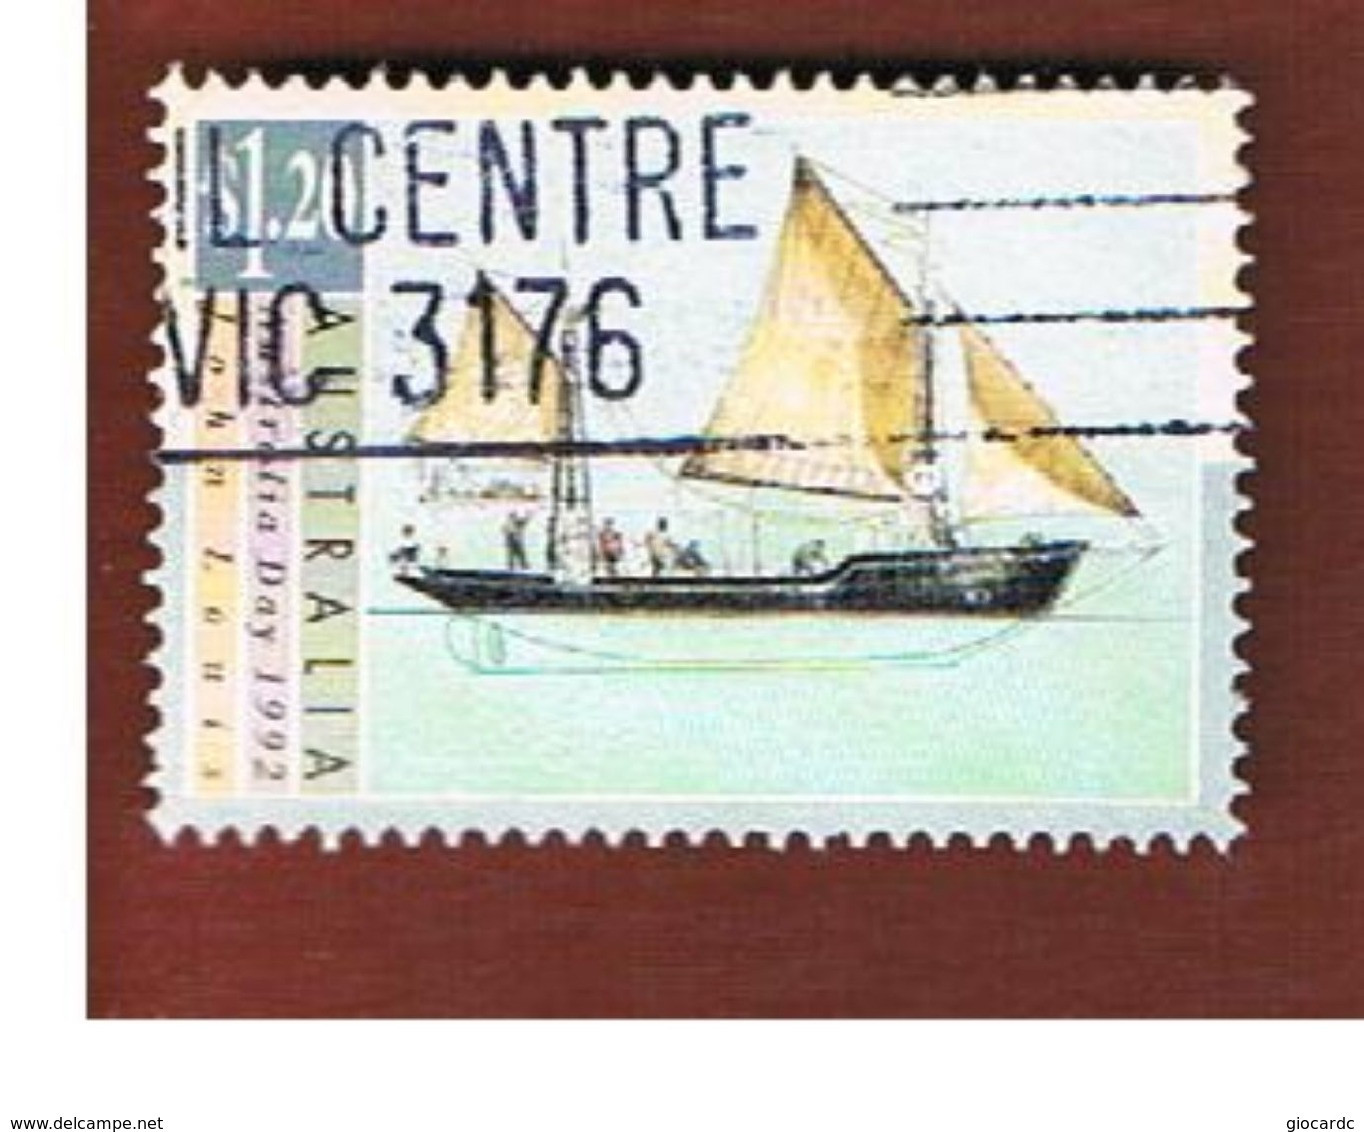 AUSTRALIA  -  SG 1336  -      1992 SHIPS: J. LUIS        -       USED - Oblitérés